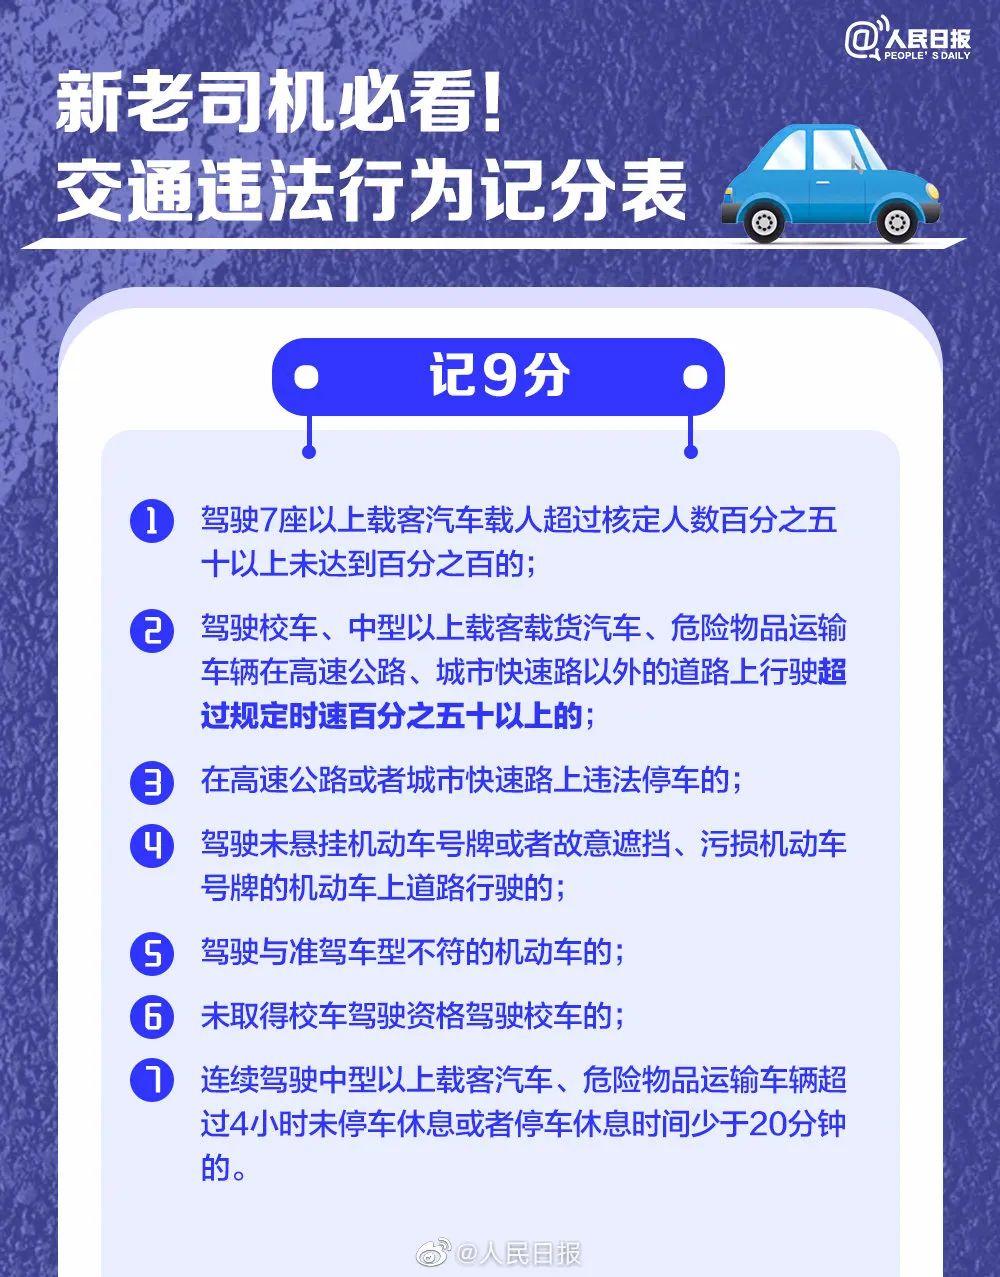 022年新规驾驶证扣分项一览表图片，驾照扣分规定"